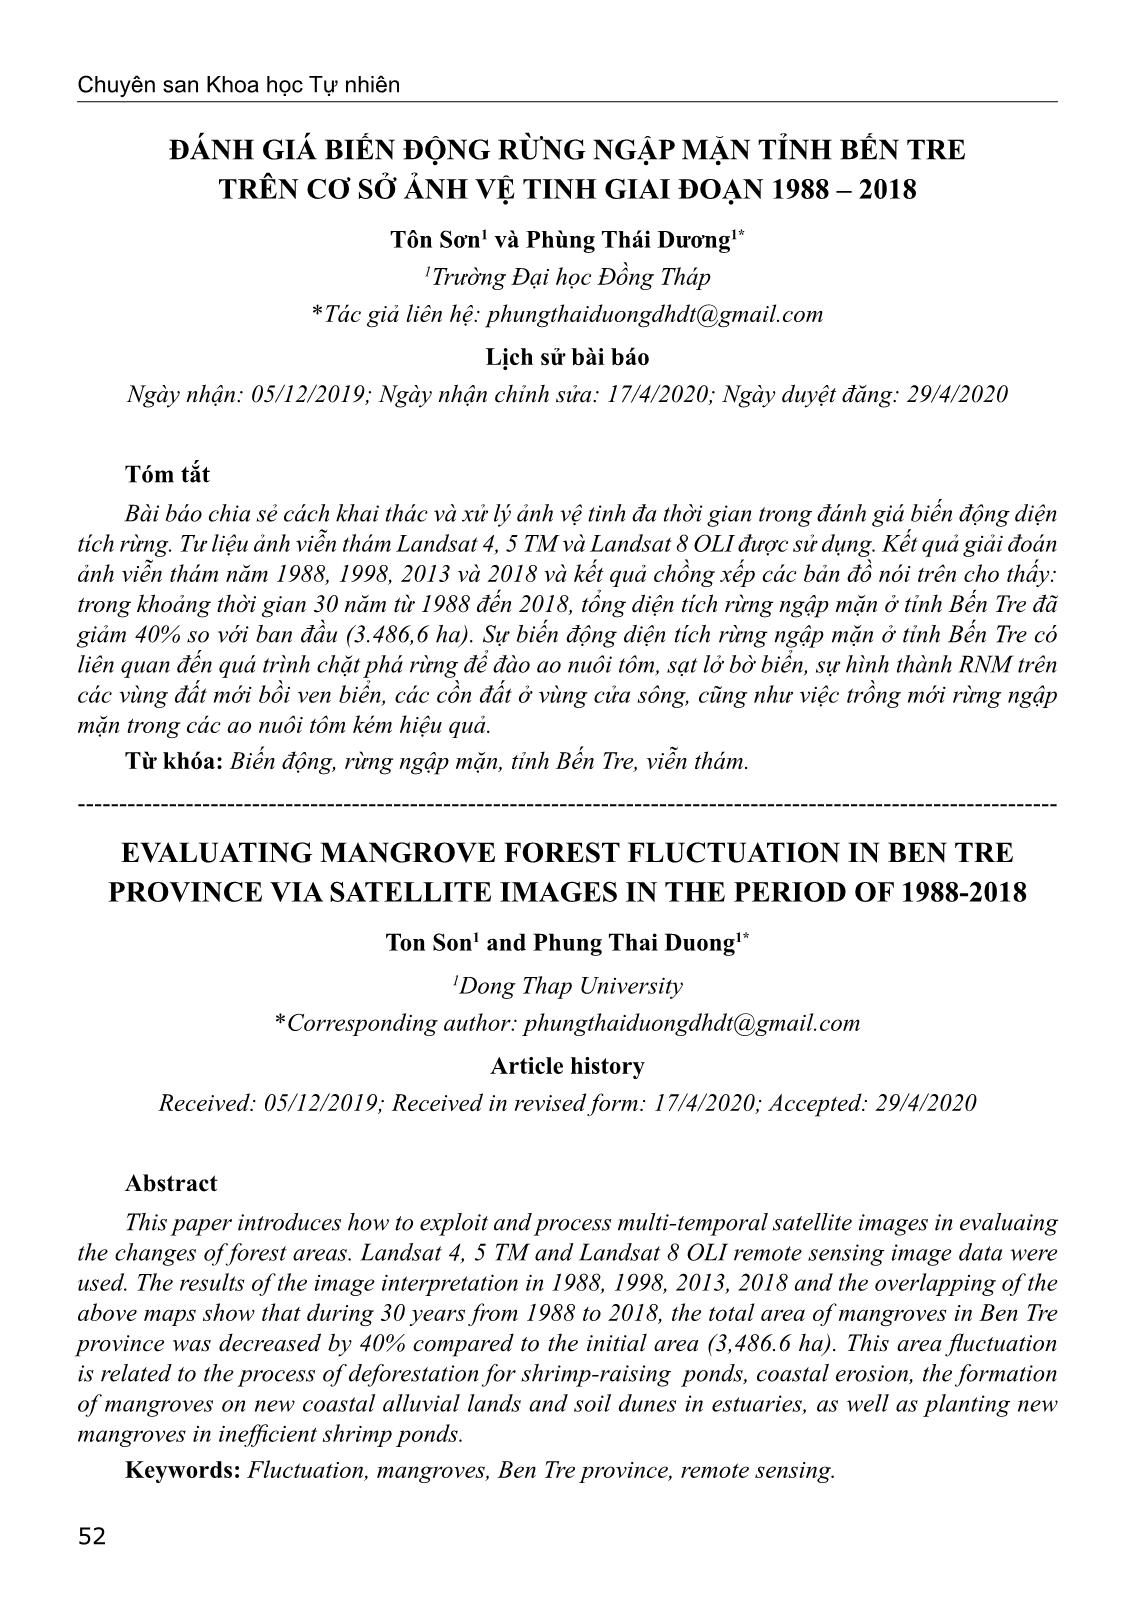 Đánh giá biến động rừng ngập mặn tỉnh Bến Tre trên cơ sở ảnh vệ tinh giai đoạn 1988-2018 trang 1